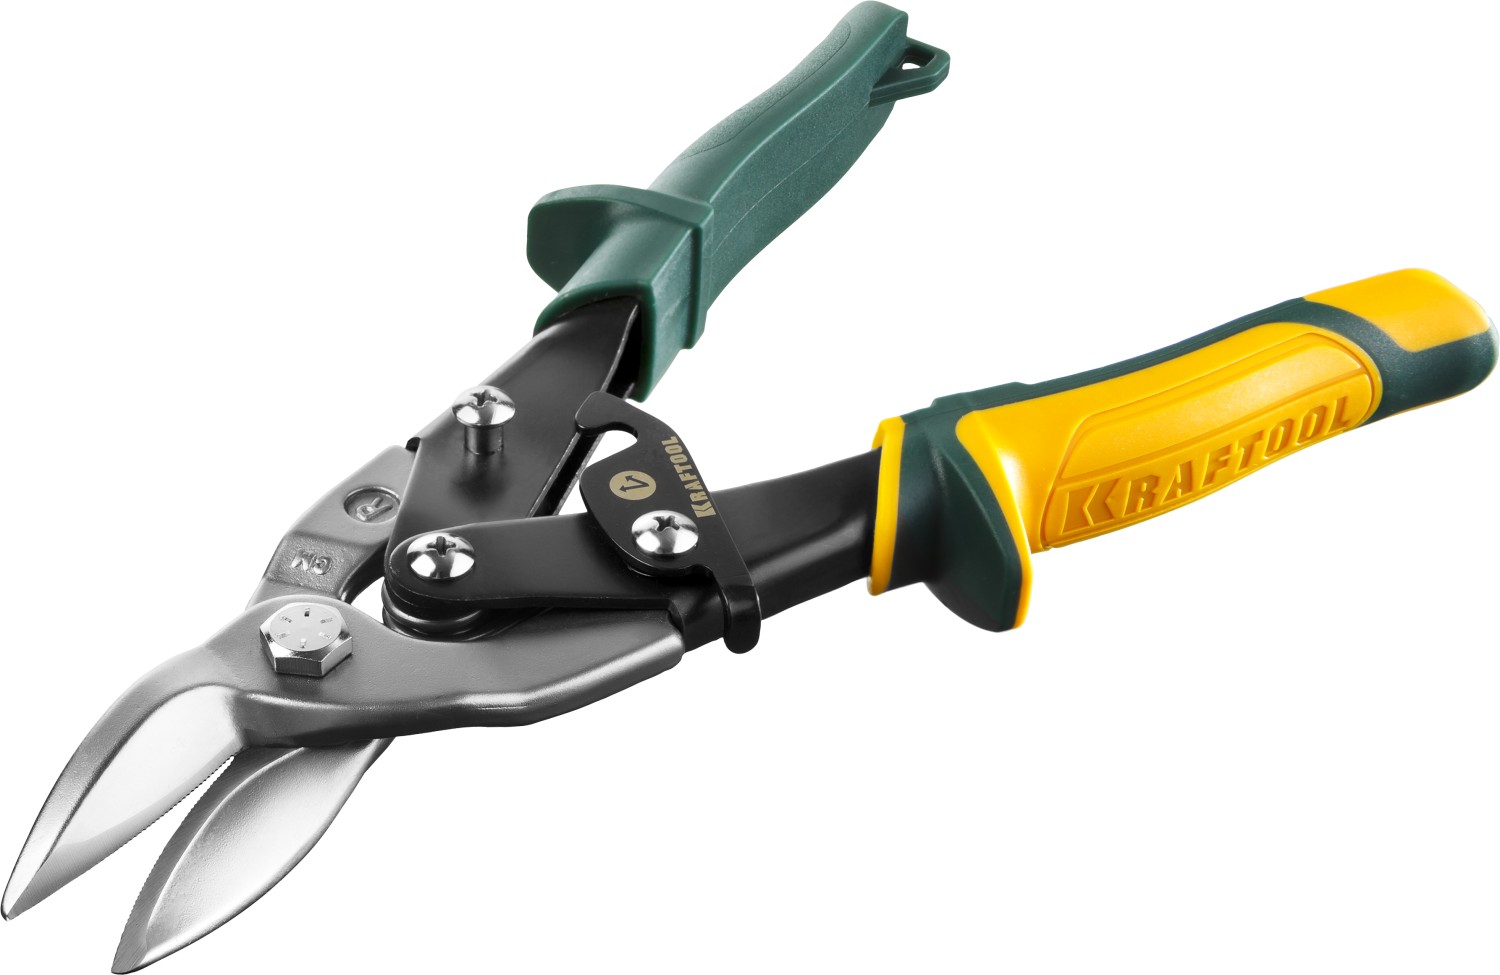 Ручные профессиональные ножницы по металлу: обзор, фото и назначение инструмента для резки металла